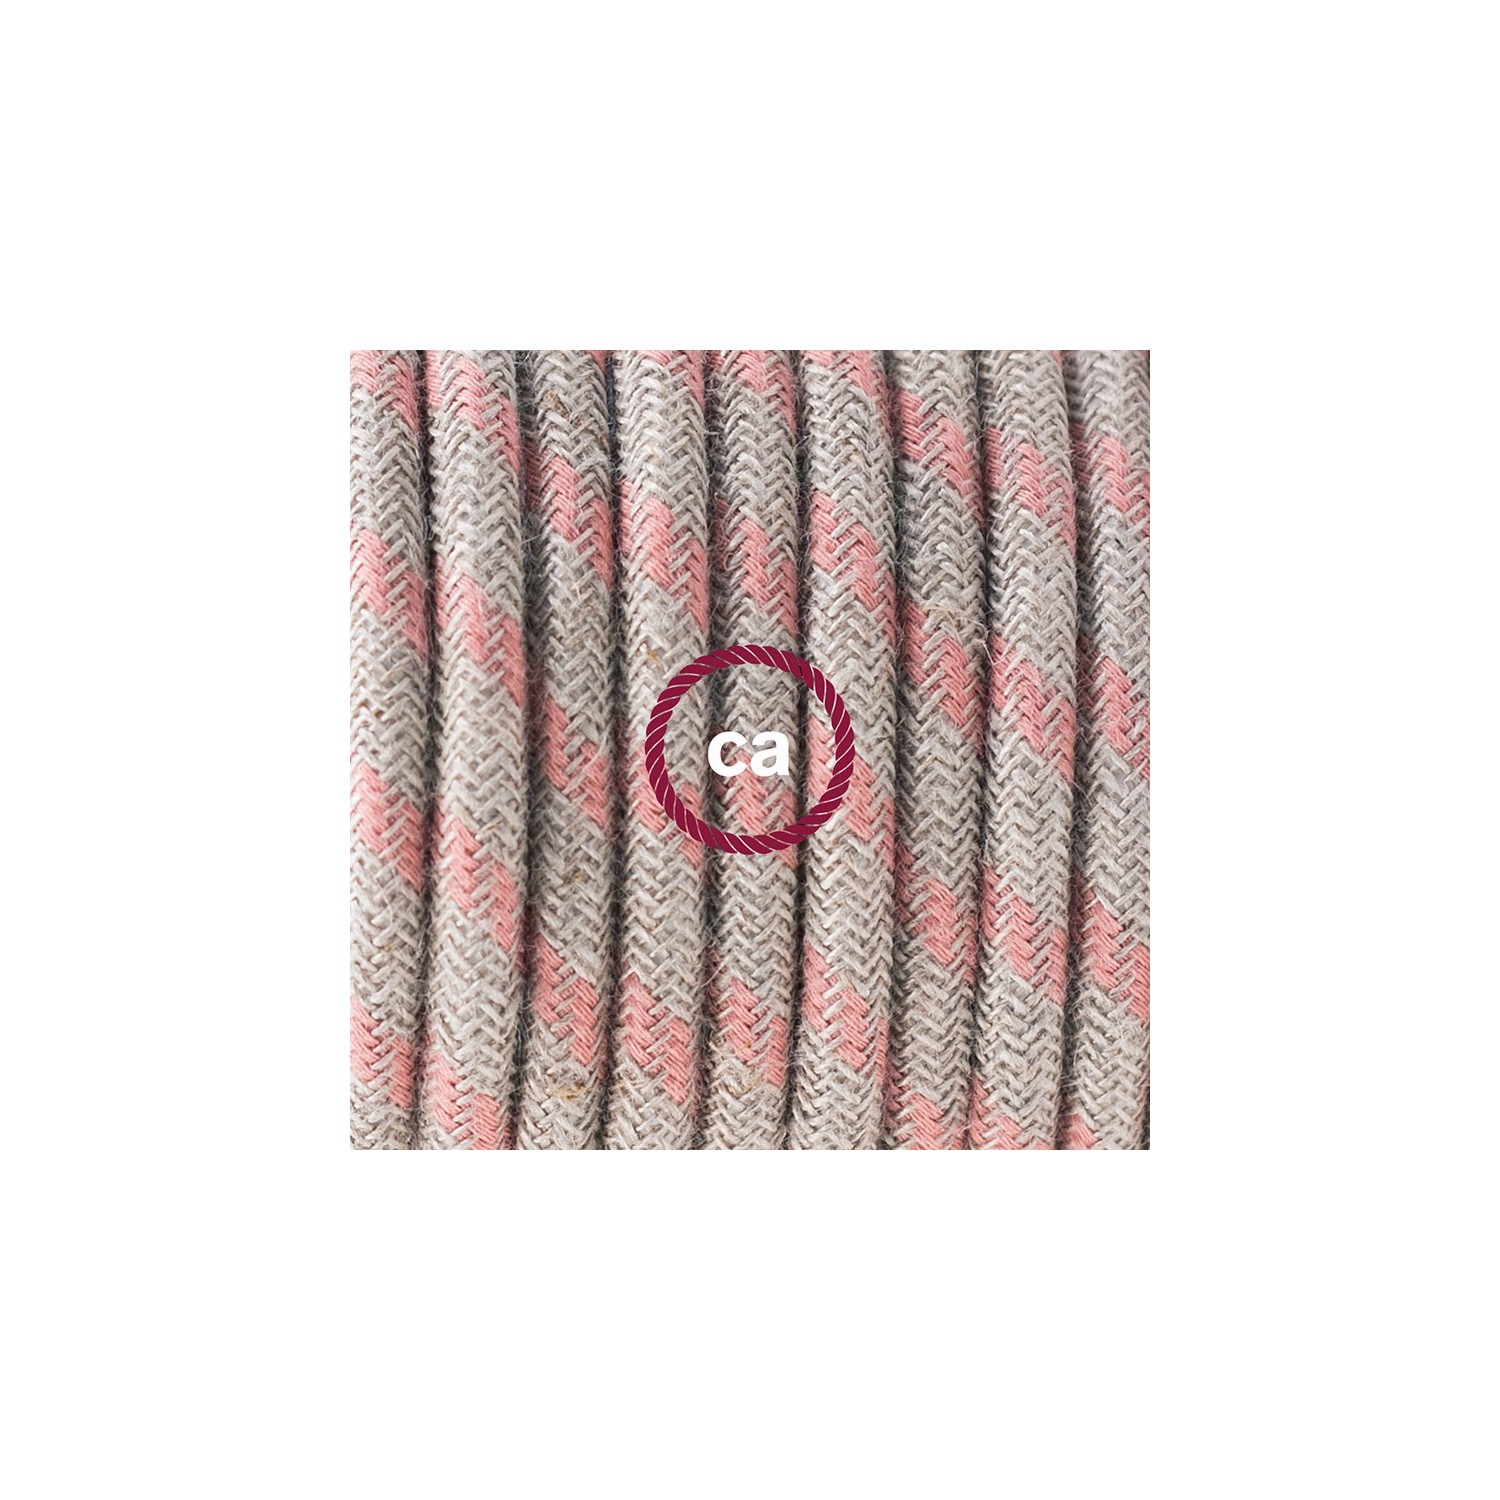 Ronde flexibele textielkabel van katoen en linnen met schakelaar en stekker. RD51 - streep motief "oud" roze en linnen 1,80 m.